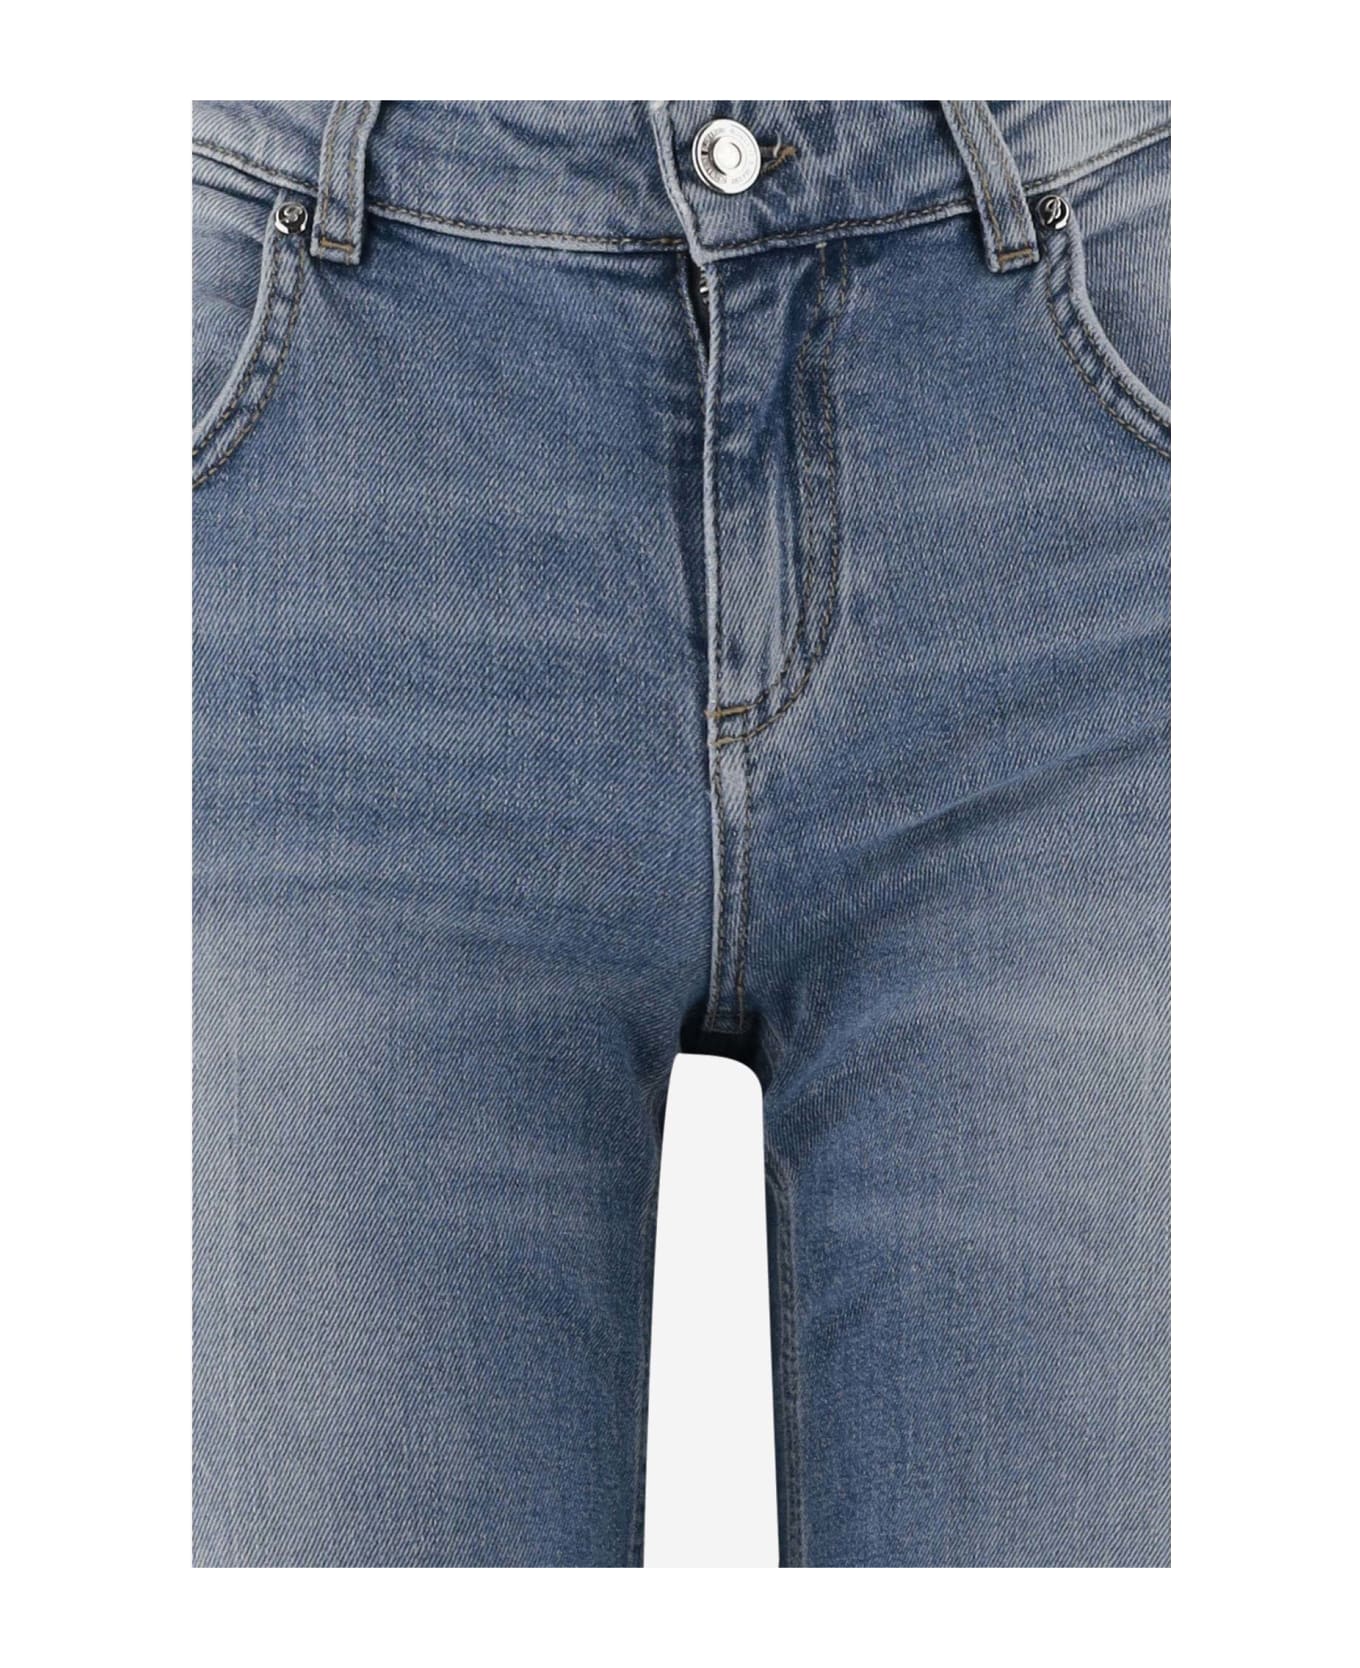 Blumarine Flared Jeans In Stretch Cotton Denim - Denim デニム